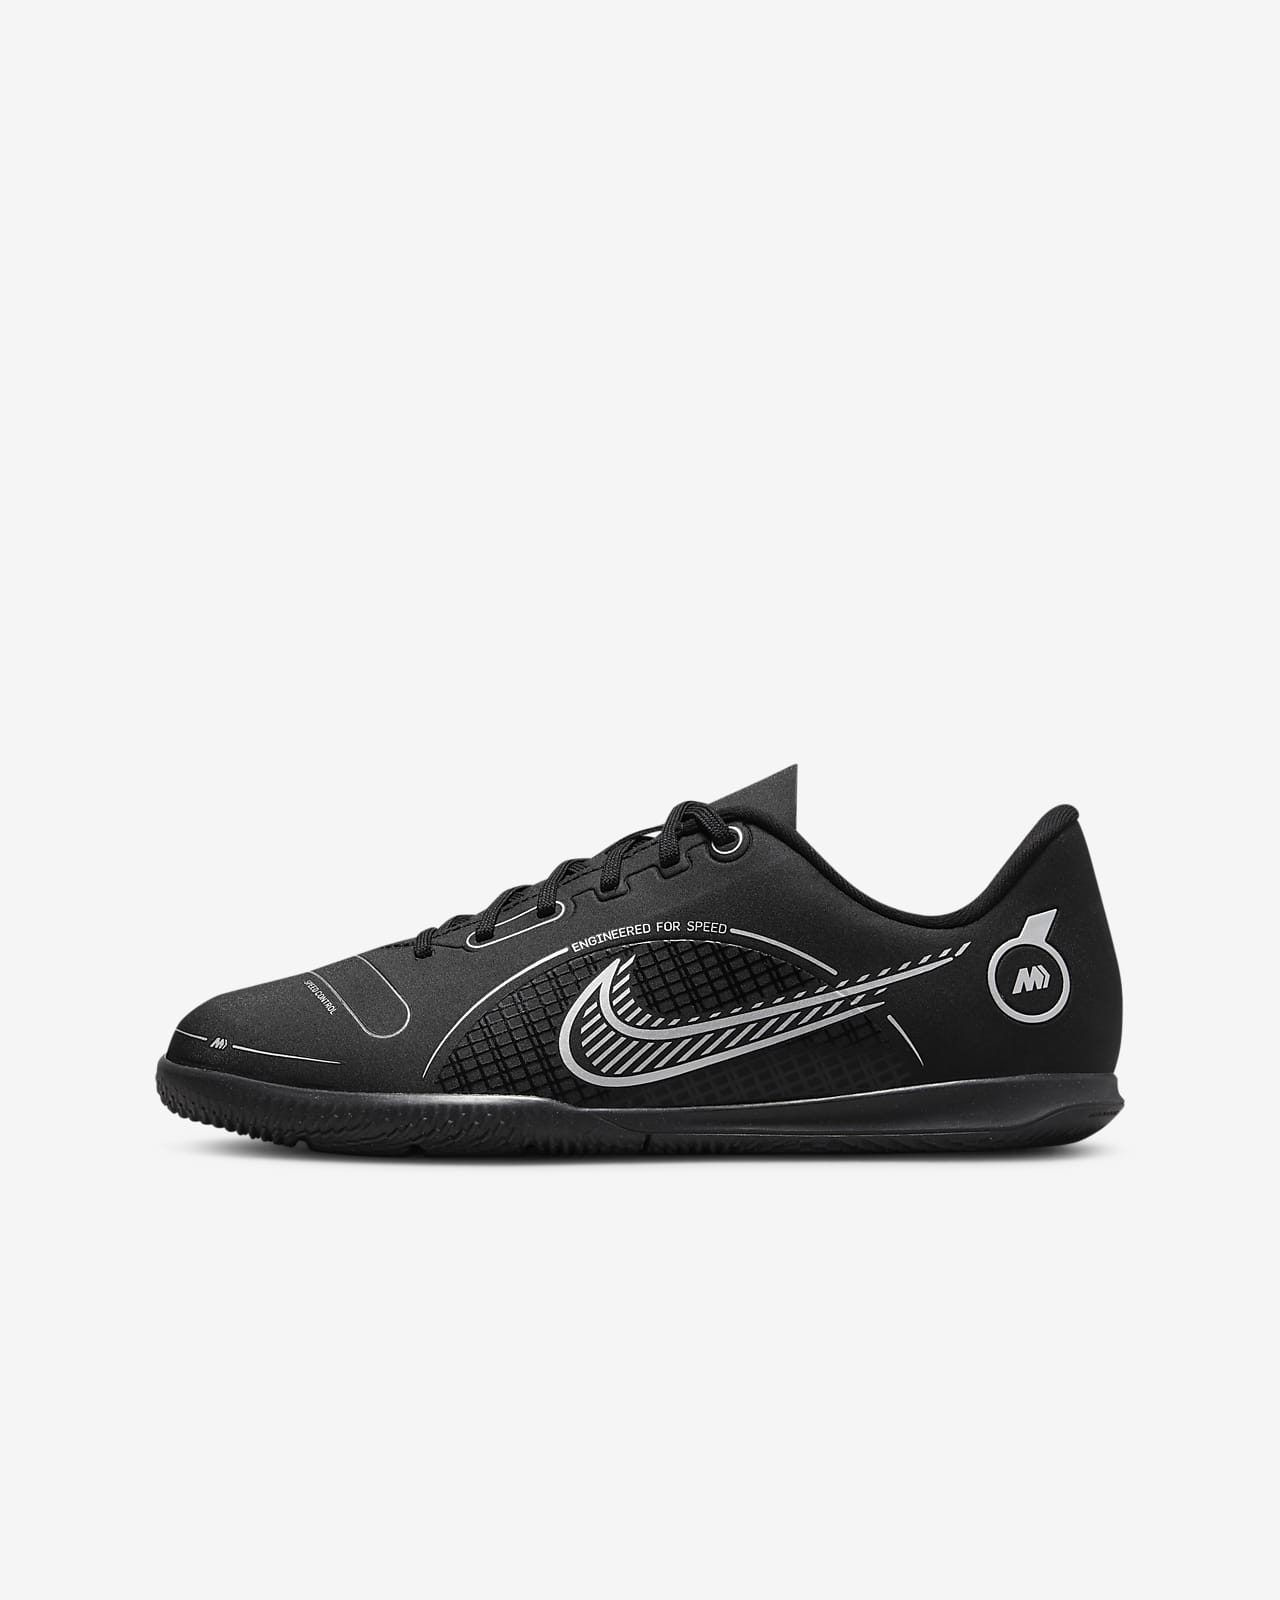 Ποδοσφαιρικά παπούτσια για κλειστά γήπεδα Nike Jr. Mercurial Vapor 14 Club IC για μικρά/μεγάλα παιδιά